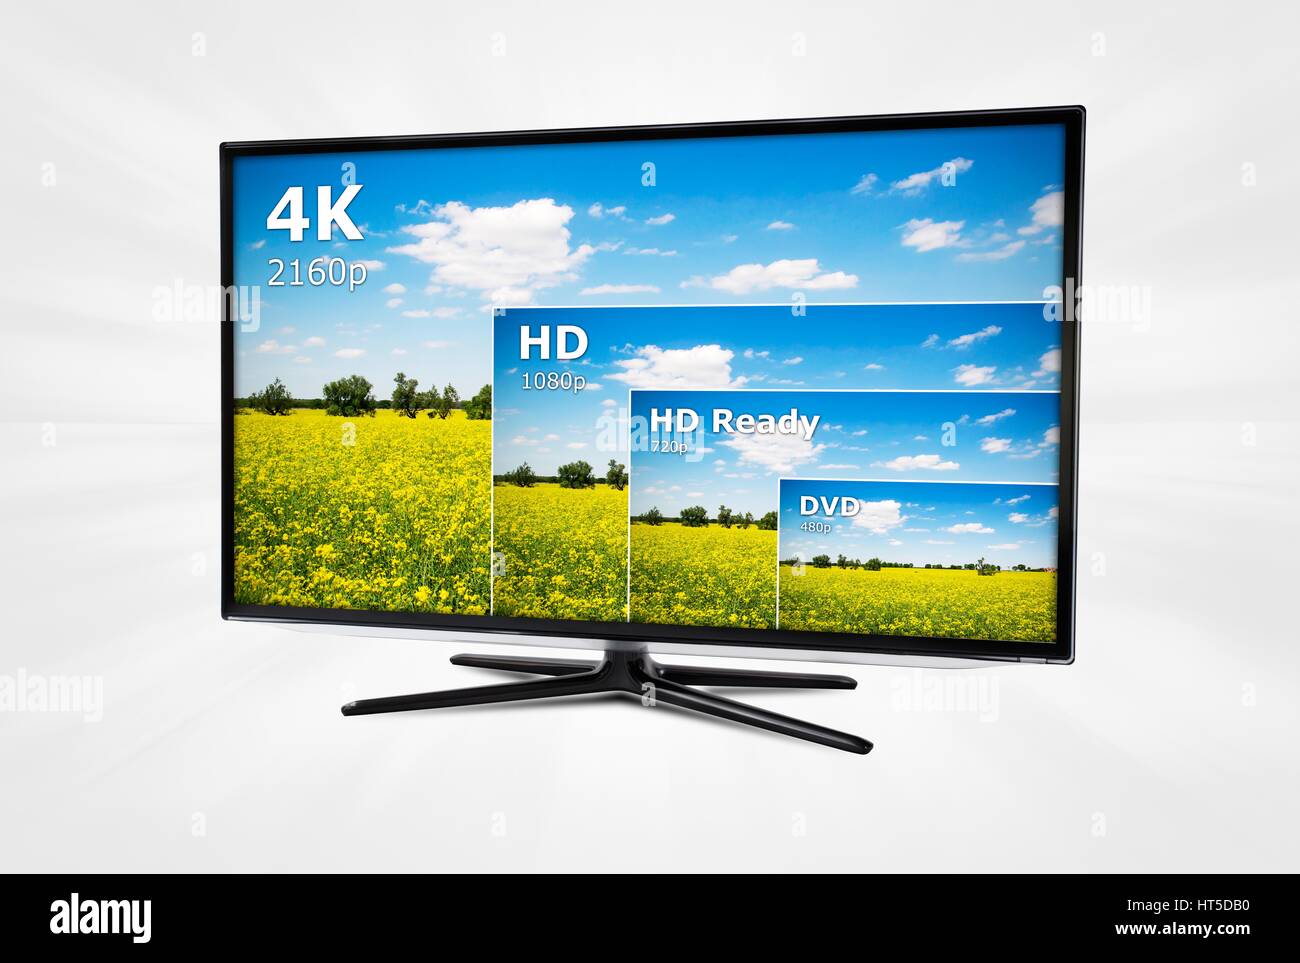 4K écran de télévision avec comparaison des résolutions Banque D'Images